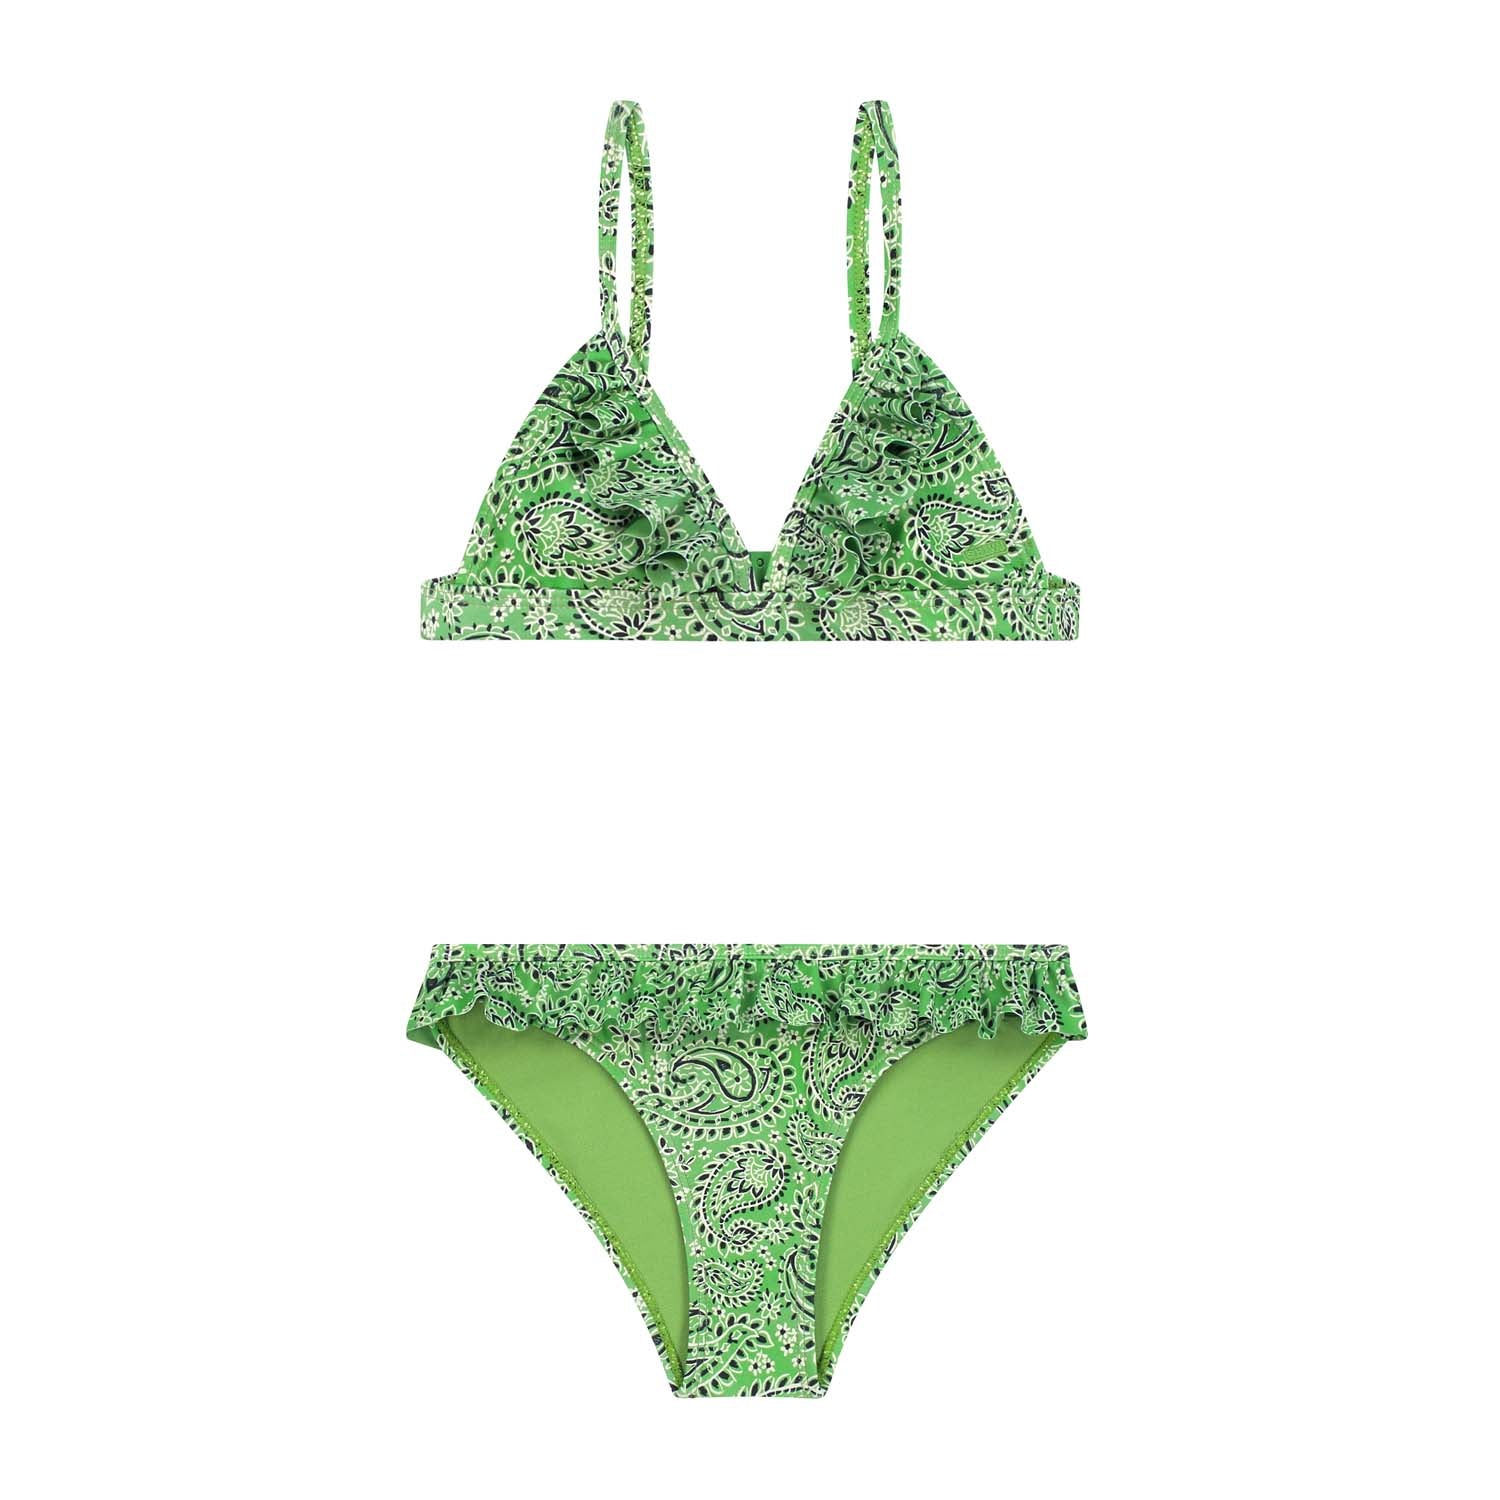 Meisjes BLAKE bikini set POOLSIDE PAISLEY  van Shiwi in de kleur kelly green  in maat 170-176.